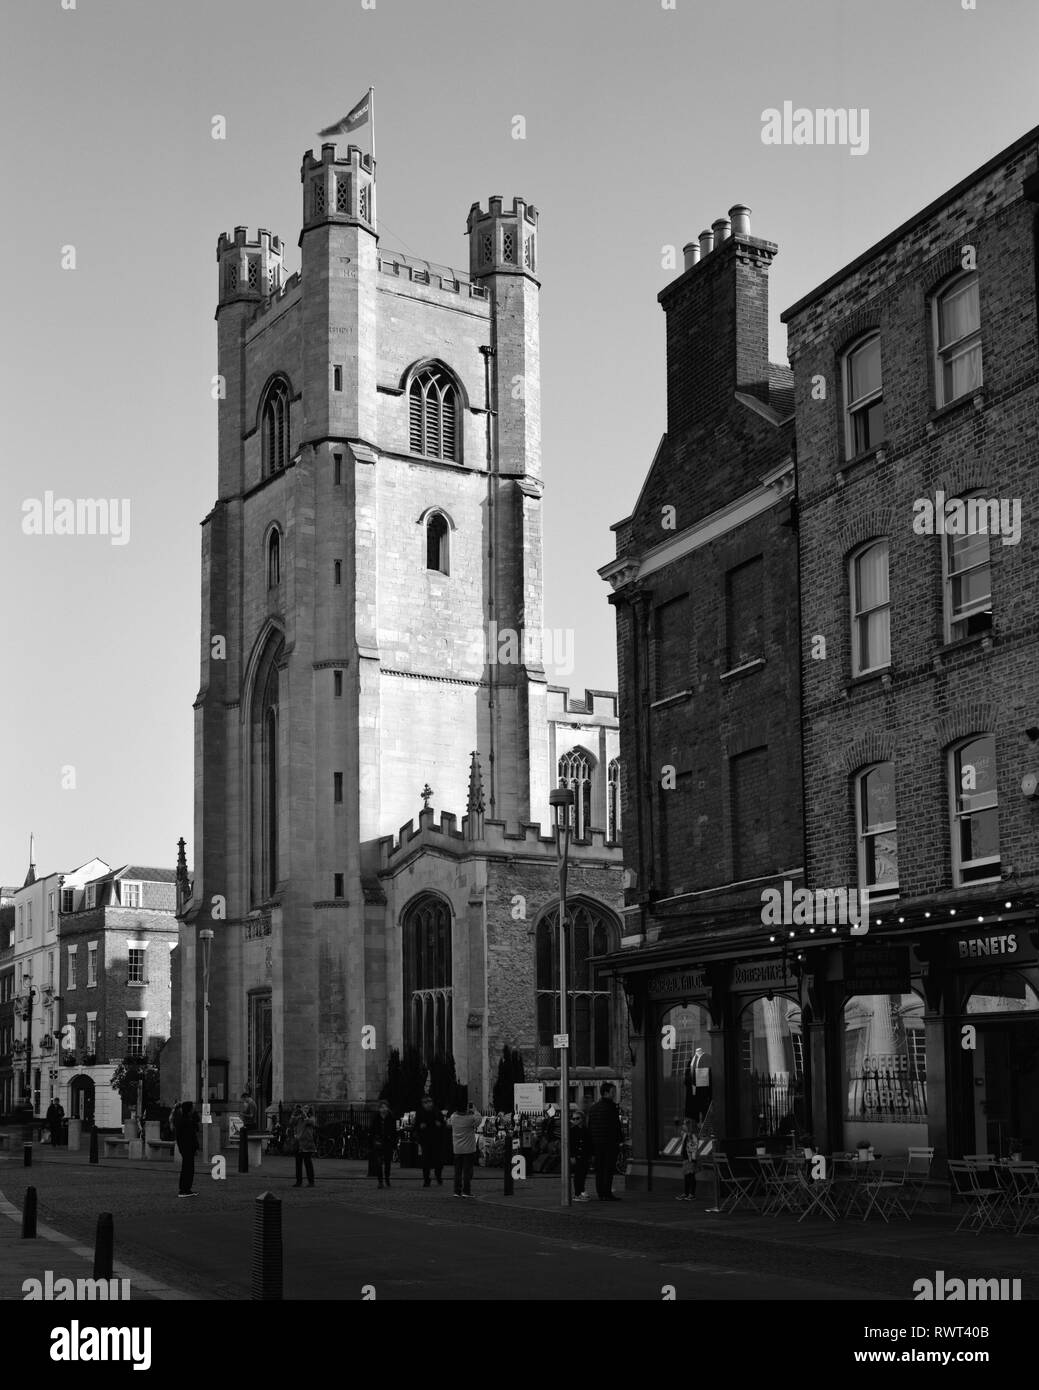 Great St Mary's Church, King's Parade Cambridge Stock Photo